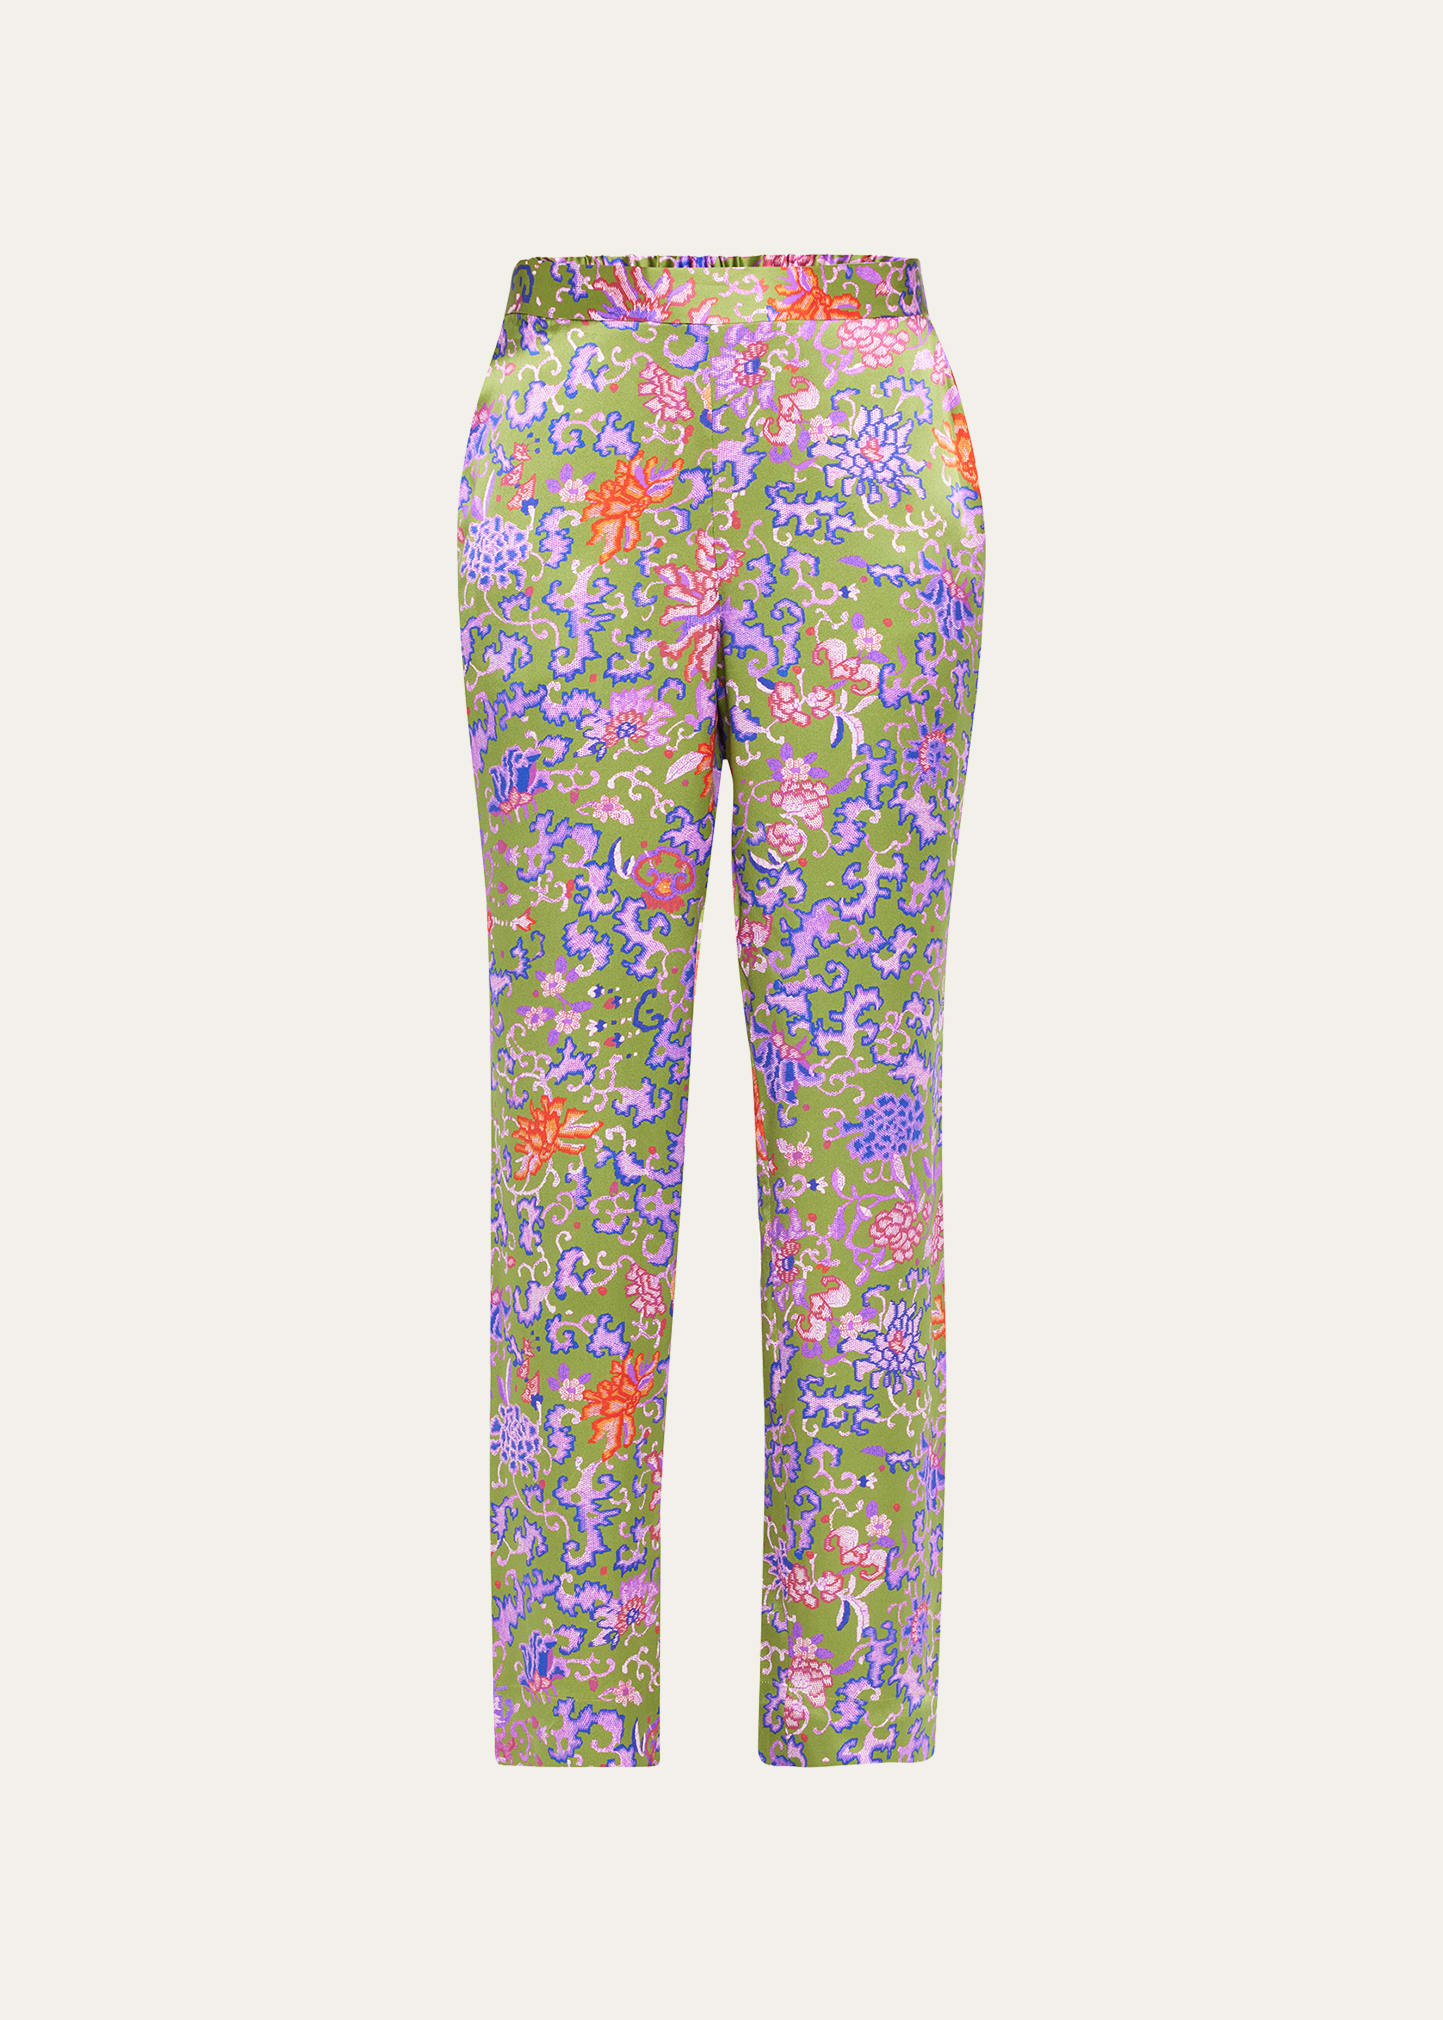 Josie Natori Yasugi Floral-Print Cropped Silk Pants